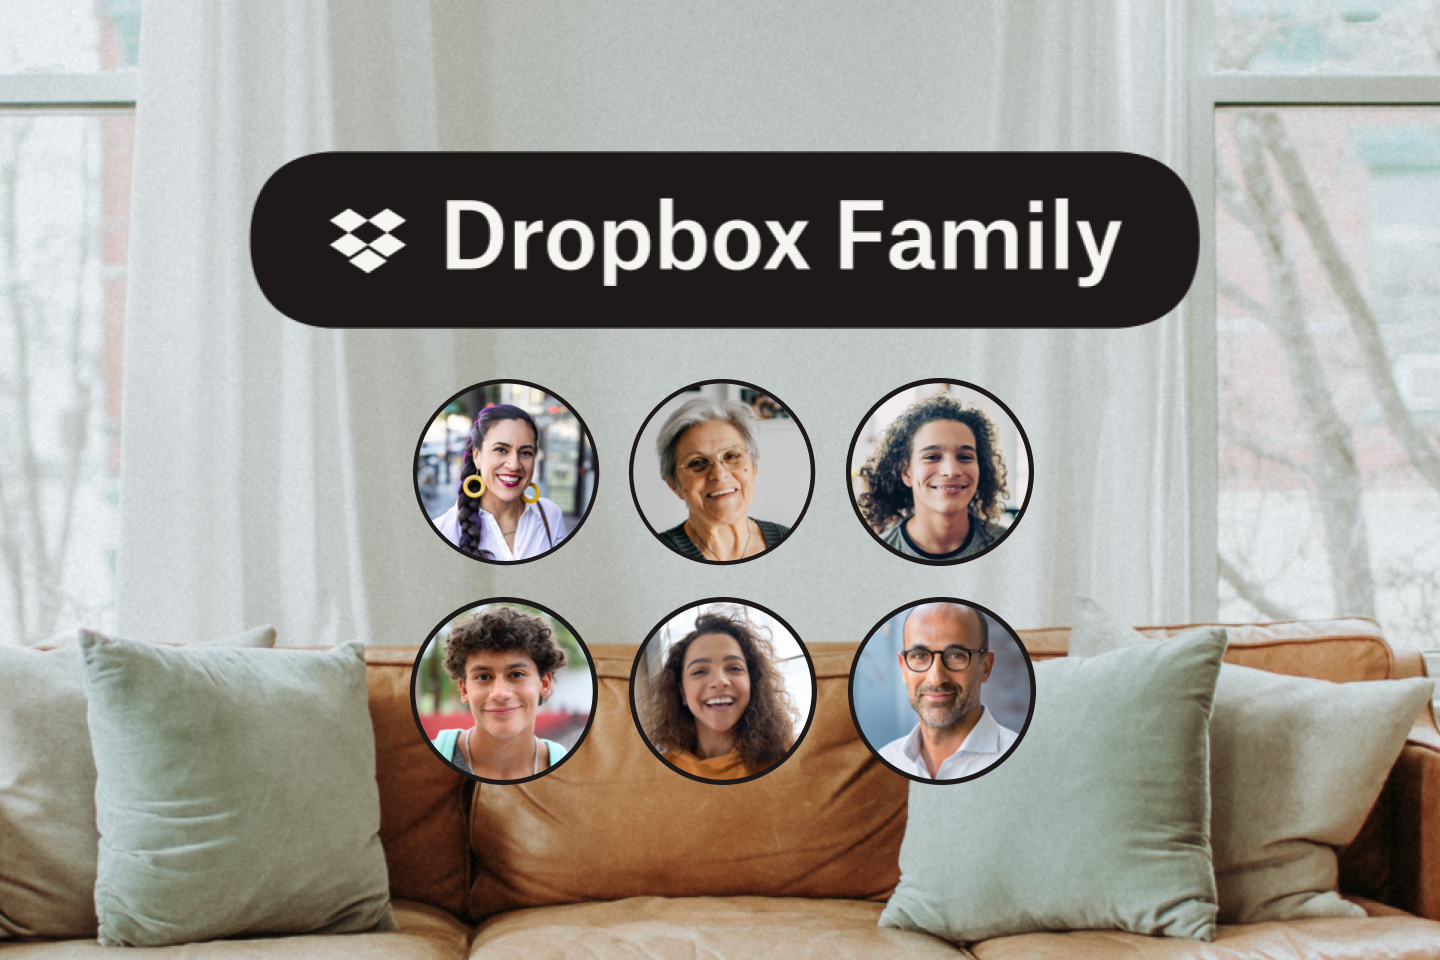 真皮沙發和帶有 Dropbox Family 標誌的 6 張家庭圖示圖片